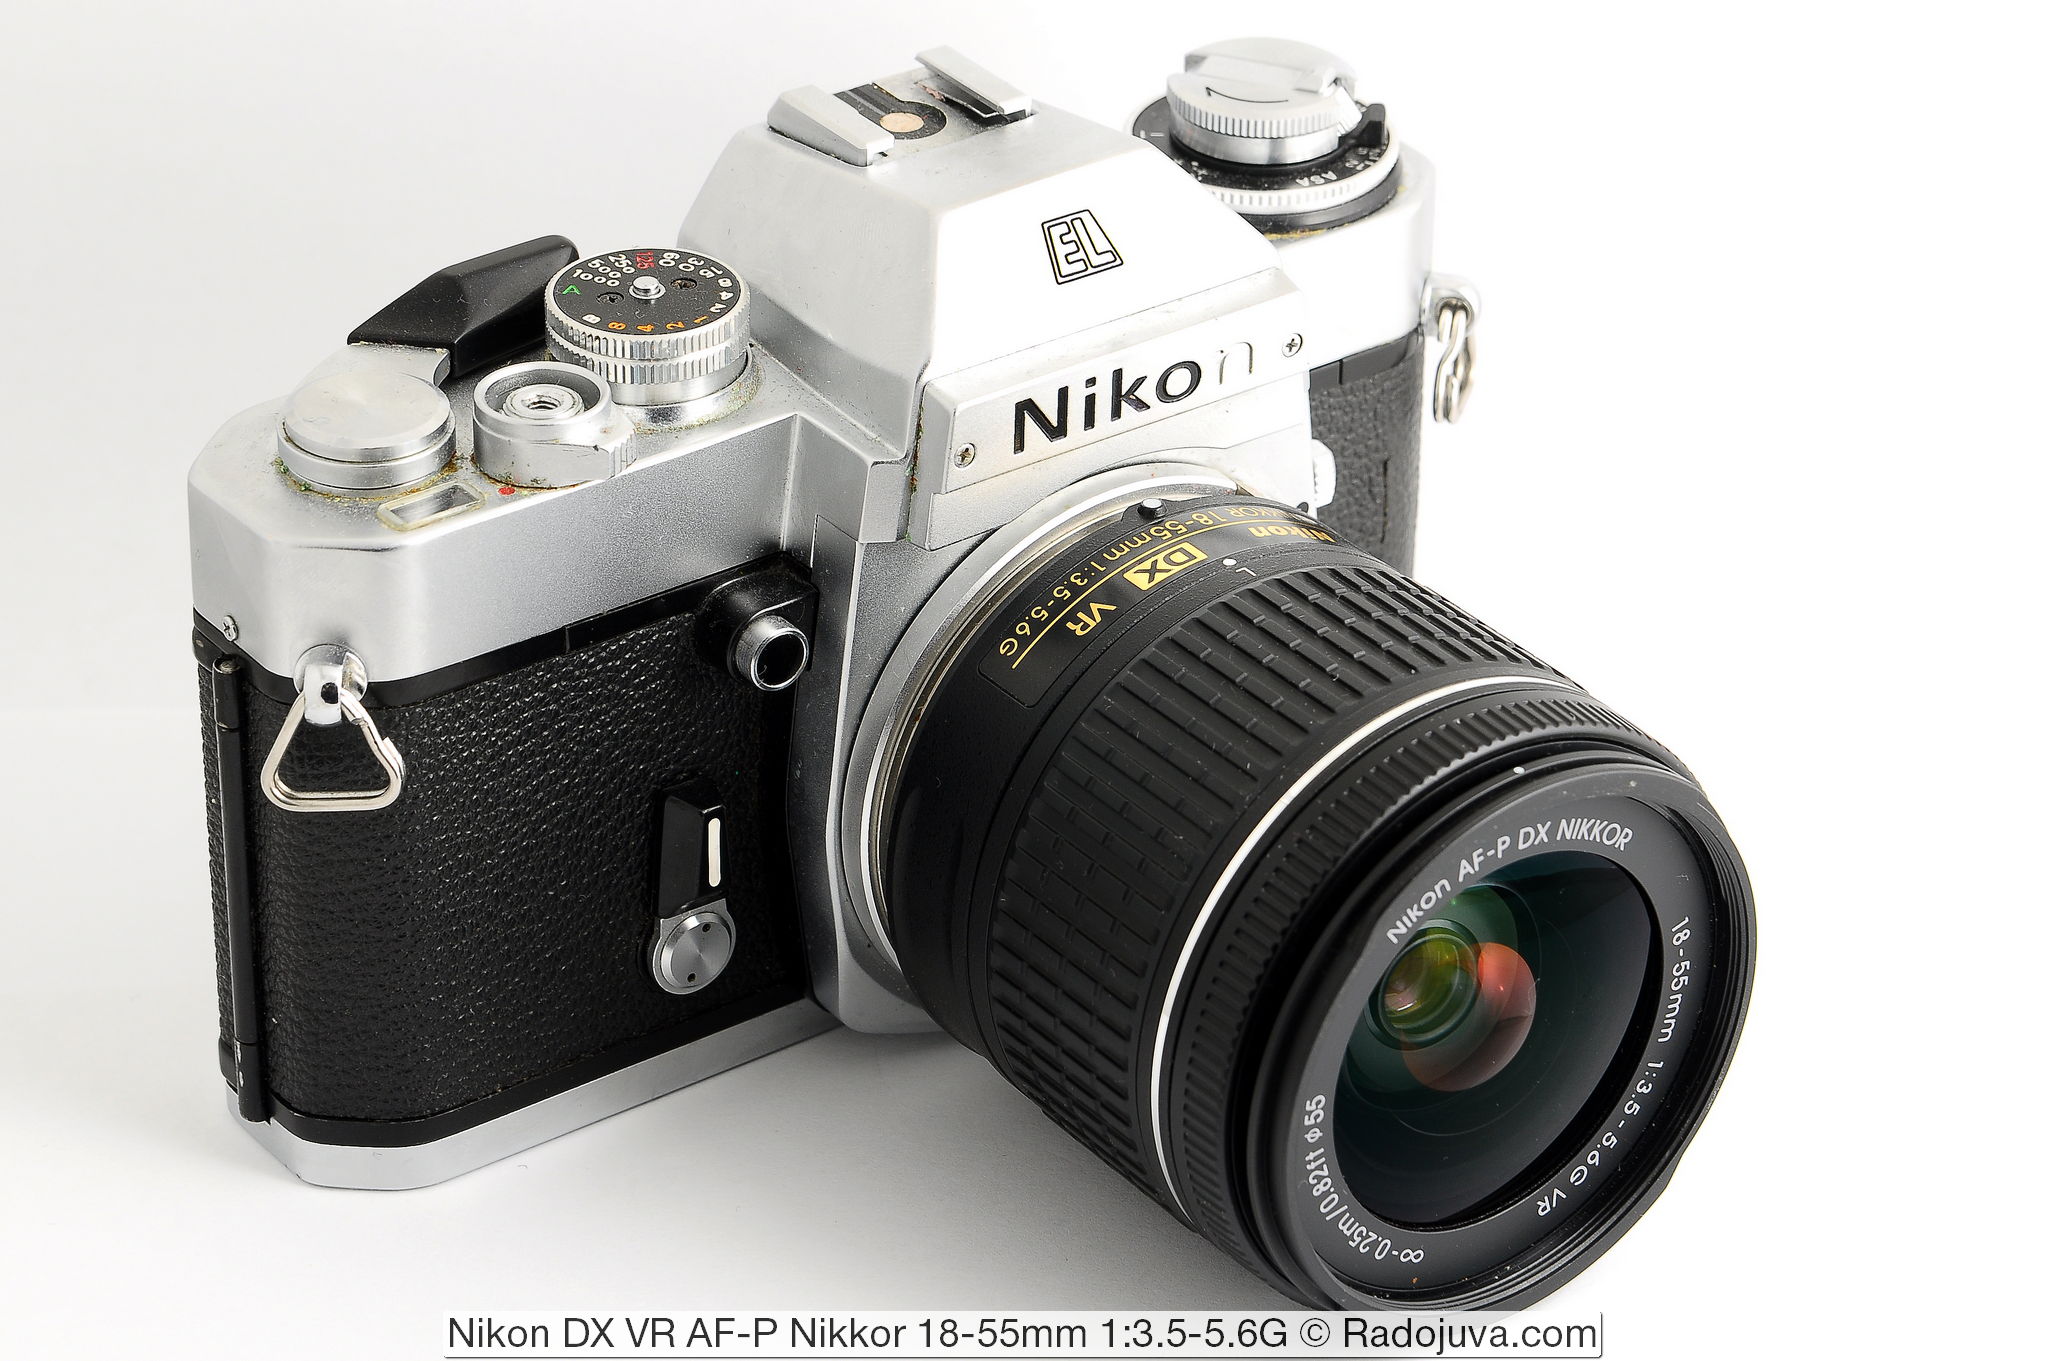 Nikon DX VR AF-P Nikkor 18-55mm 1:3.5-5.6G